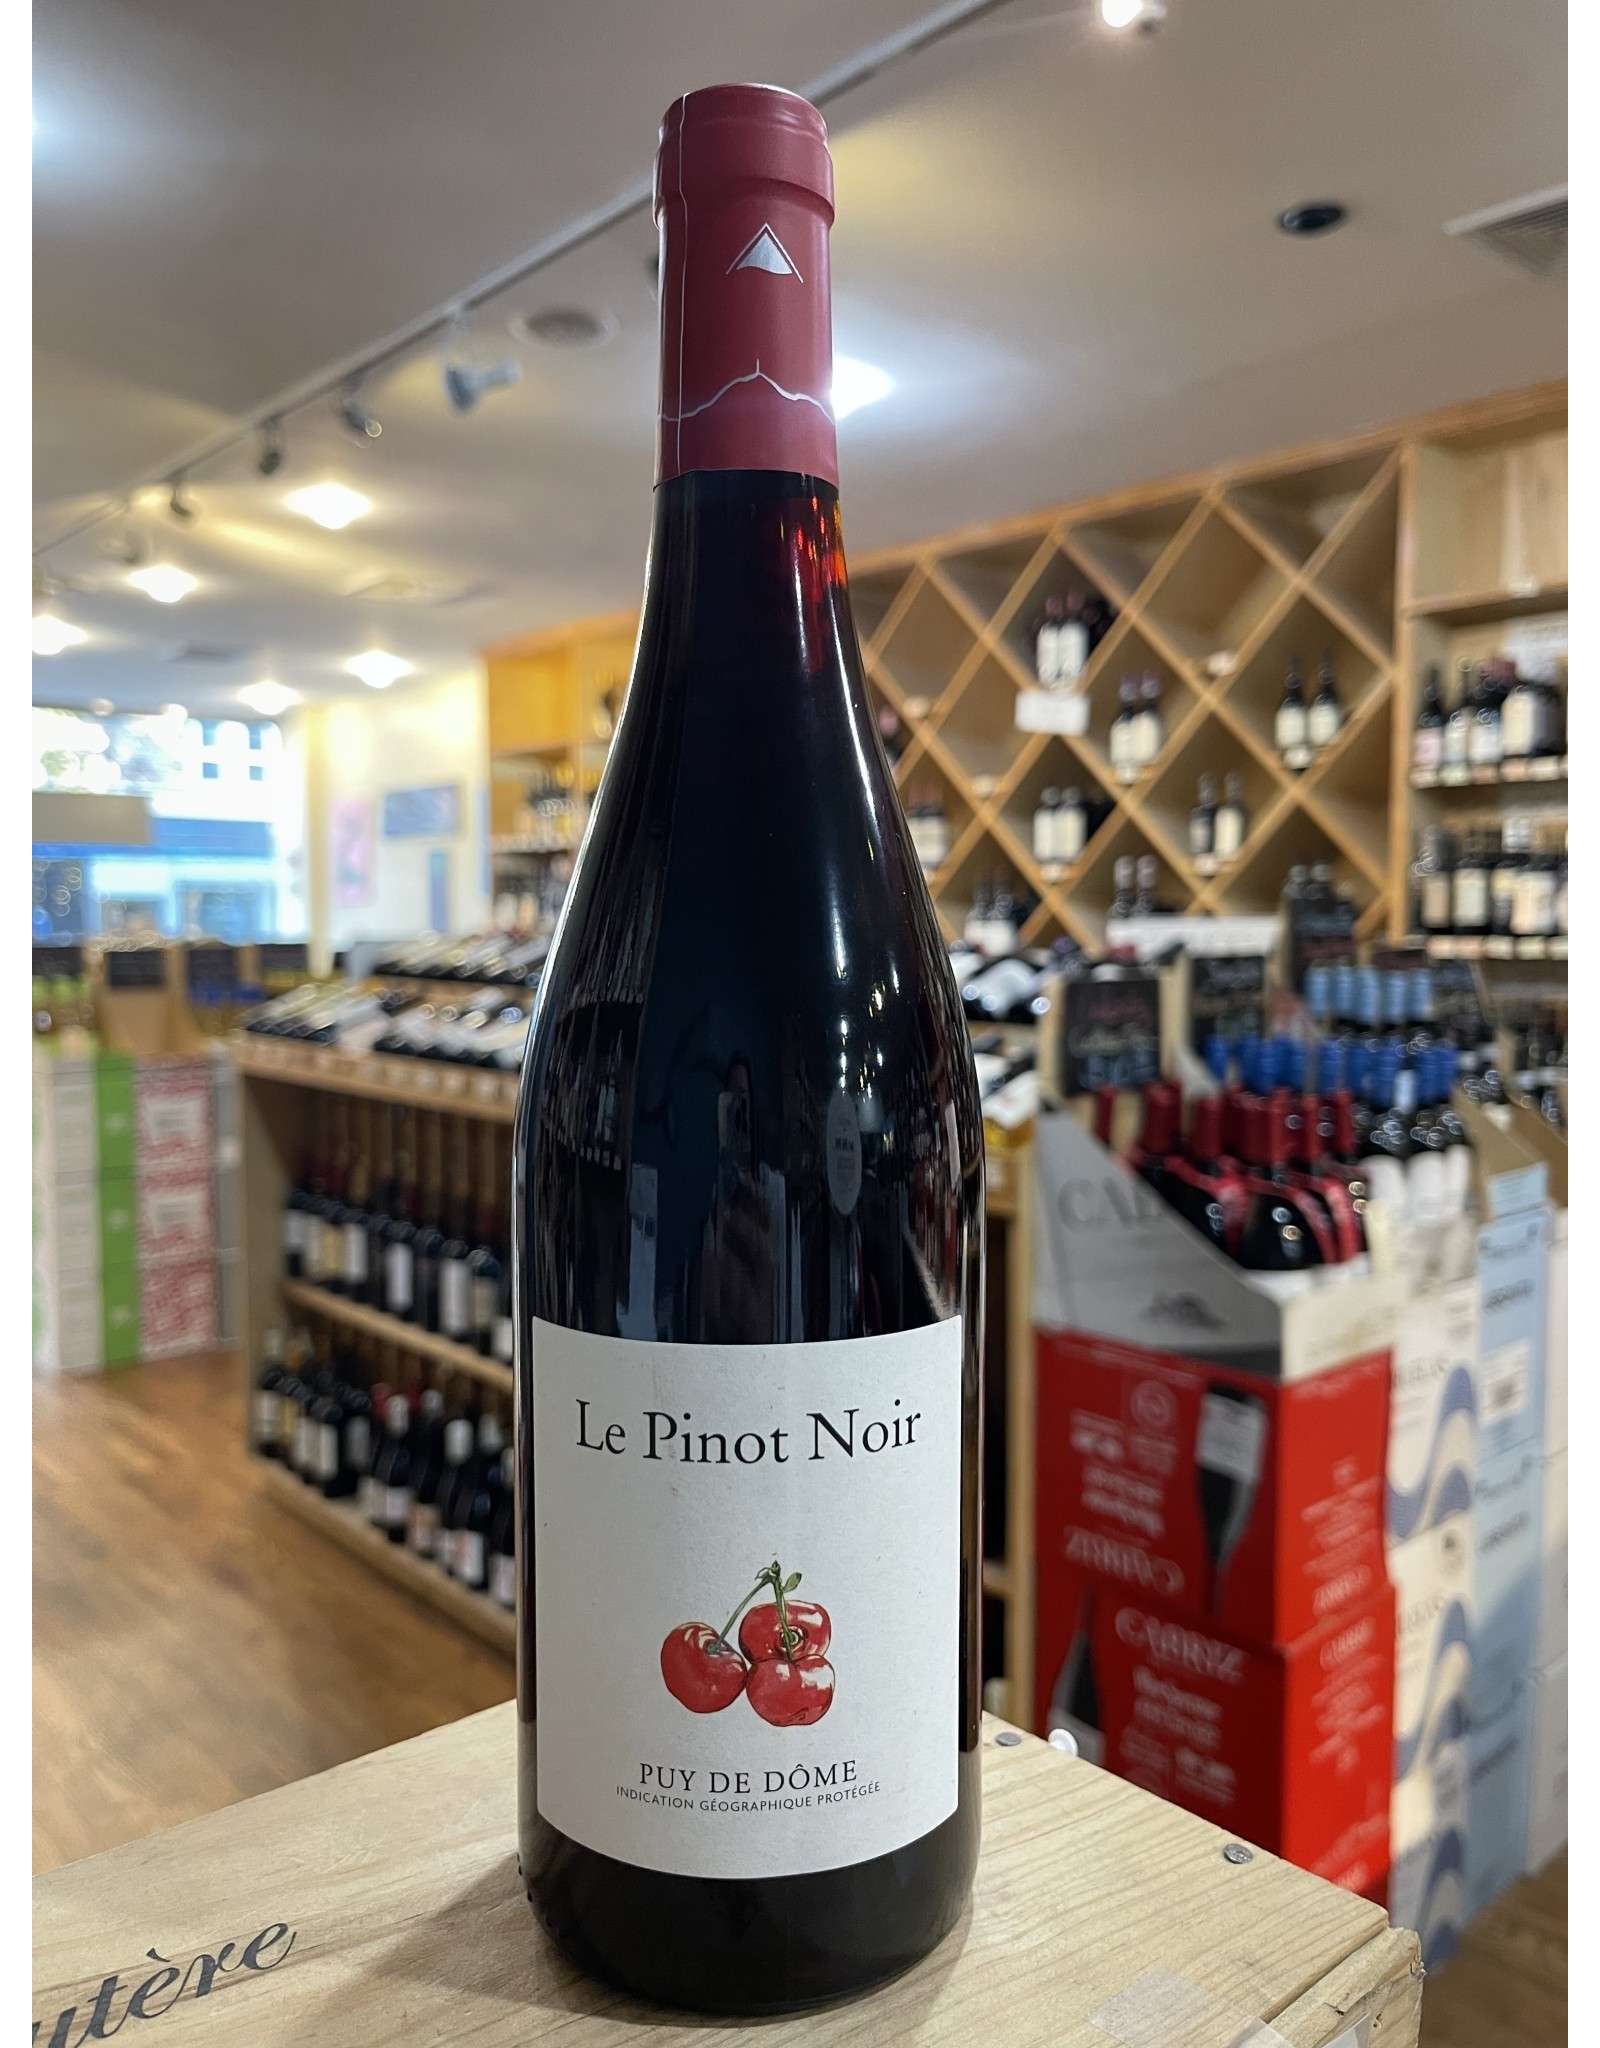 France Desprat Saint Verny Puy De Dôme Pinot Noir